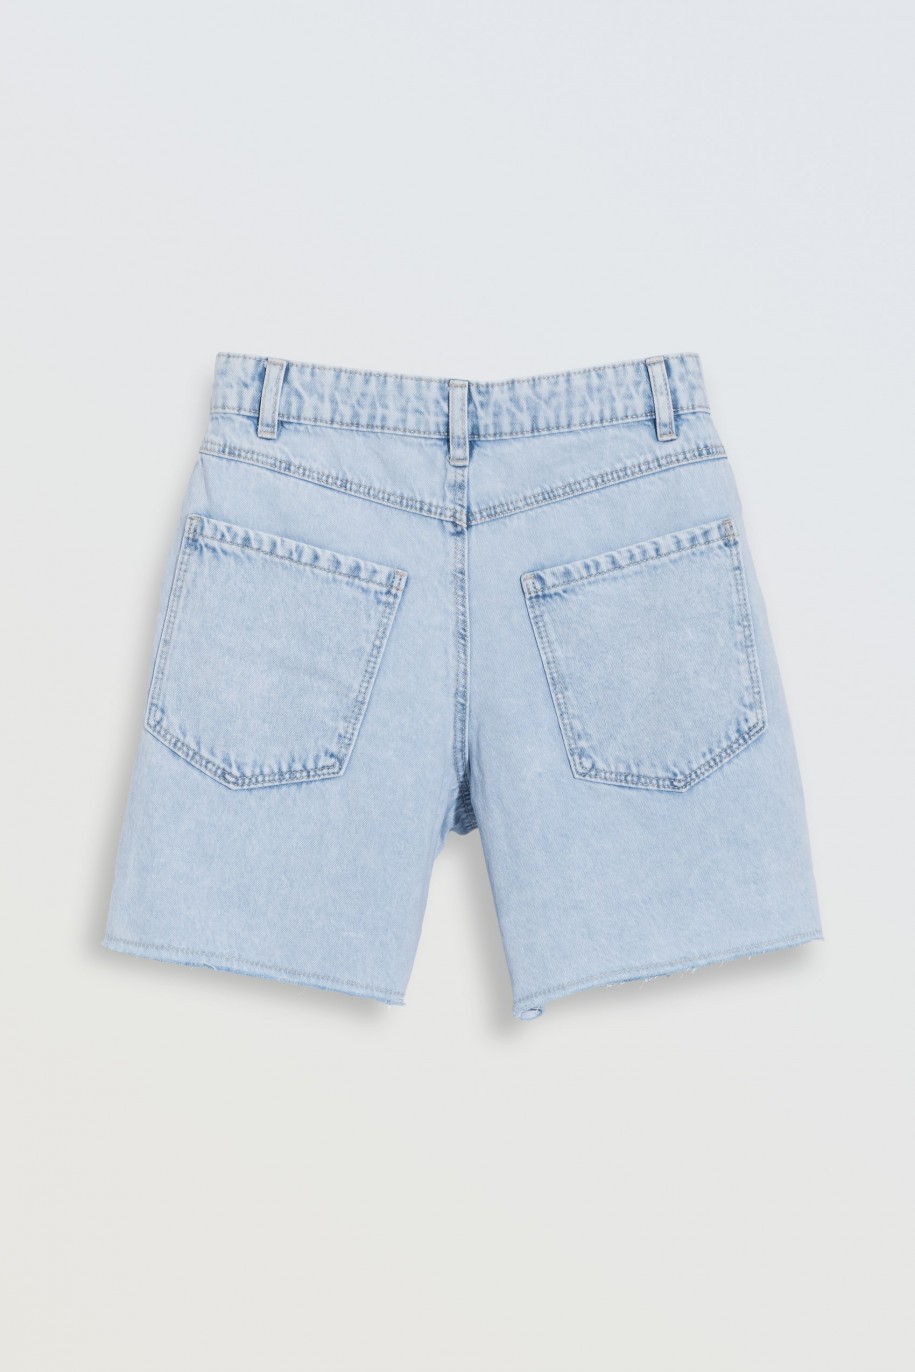 Jasnoniebieskie krótkie spodenki jeansowe - 46570